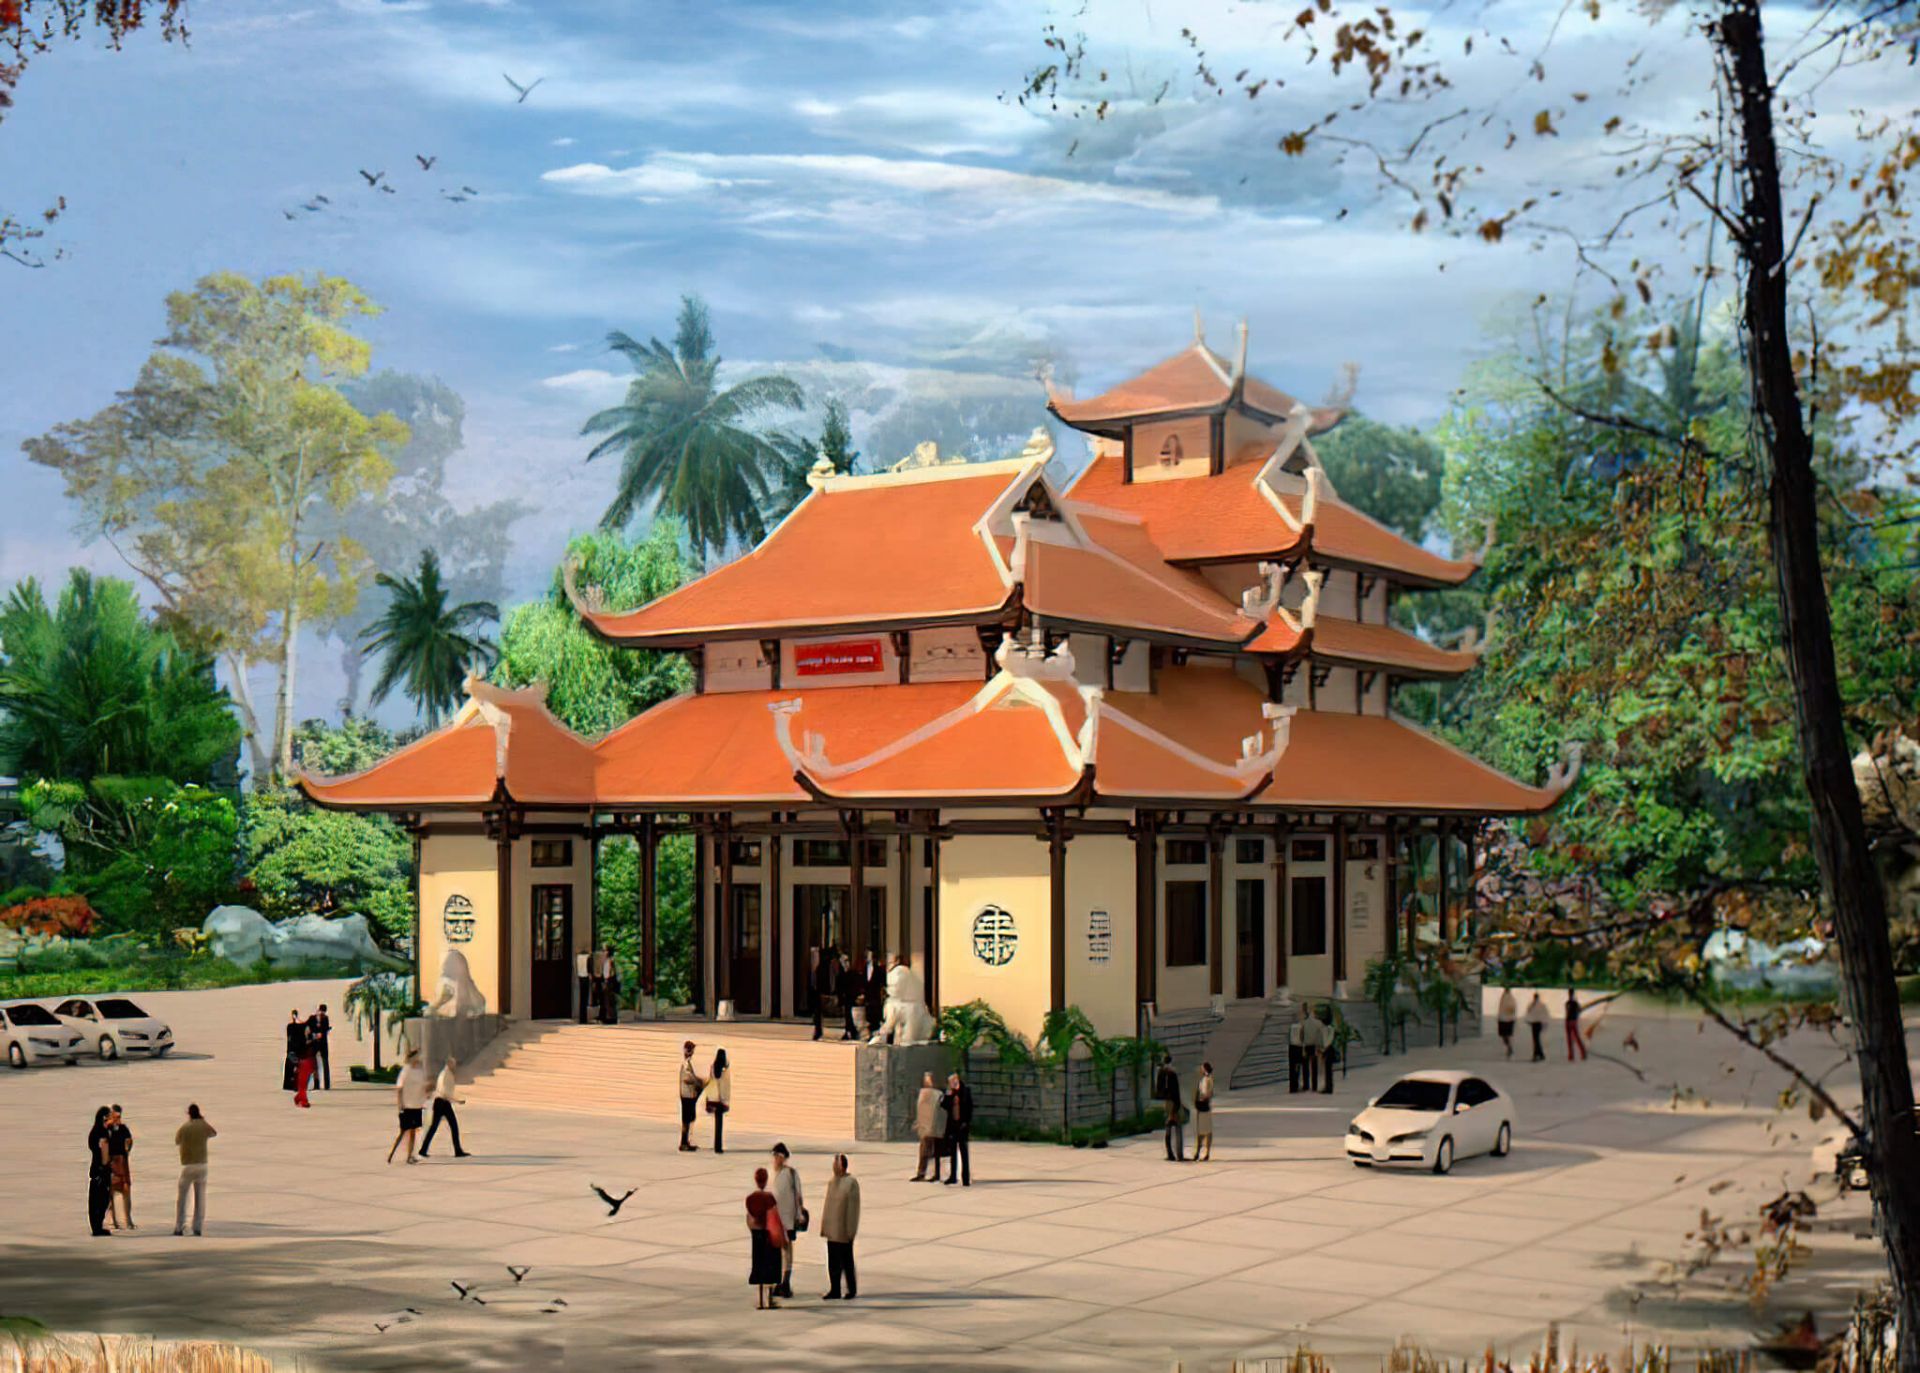 Nguyên tắc trong thiết kế chùa Việt cần nắm bắt